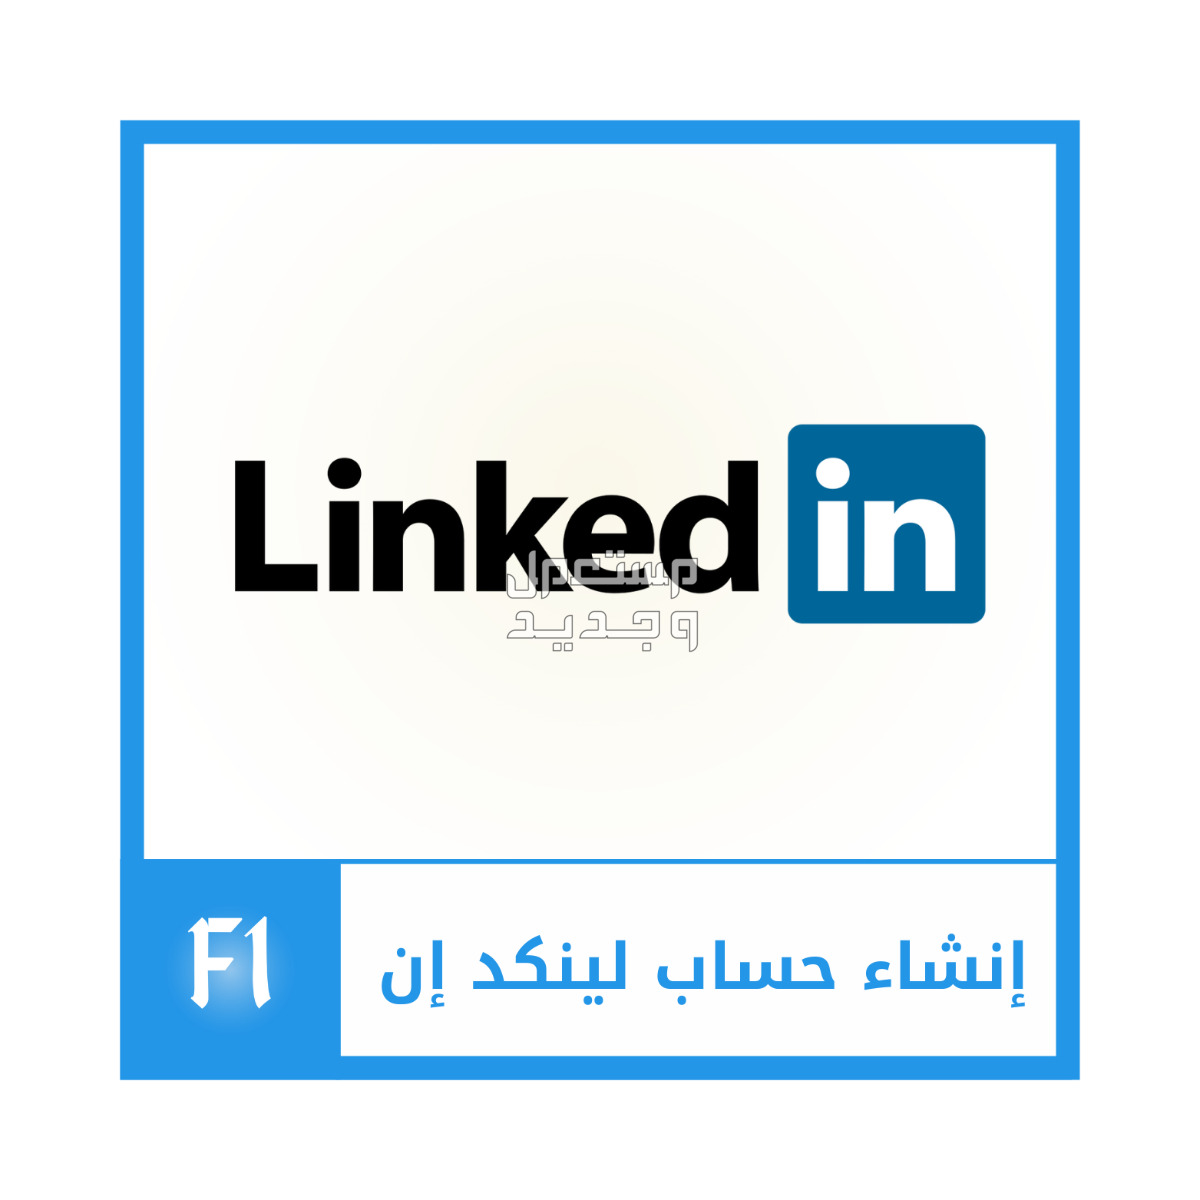 إنشاء حساب لينكد إن بسعر 3.9 دينار بحريني